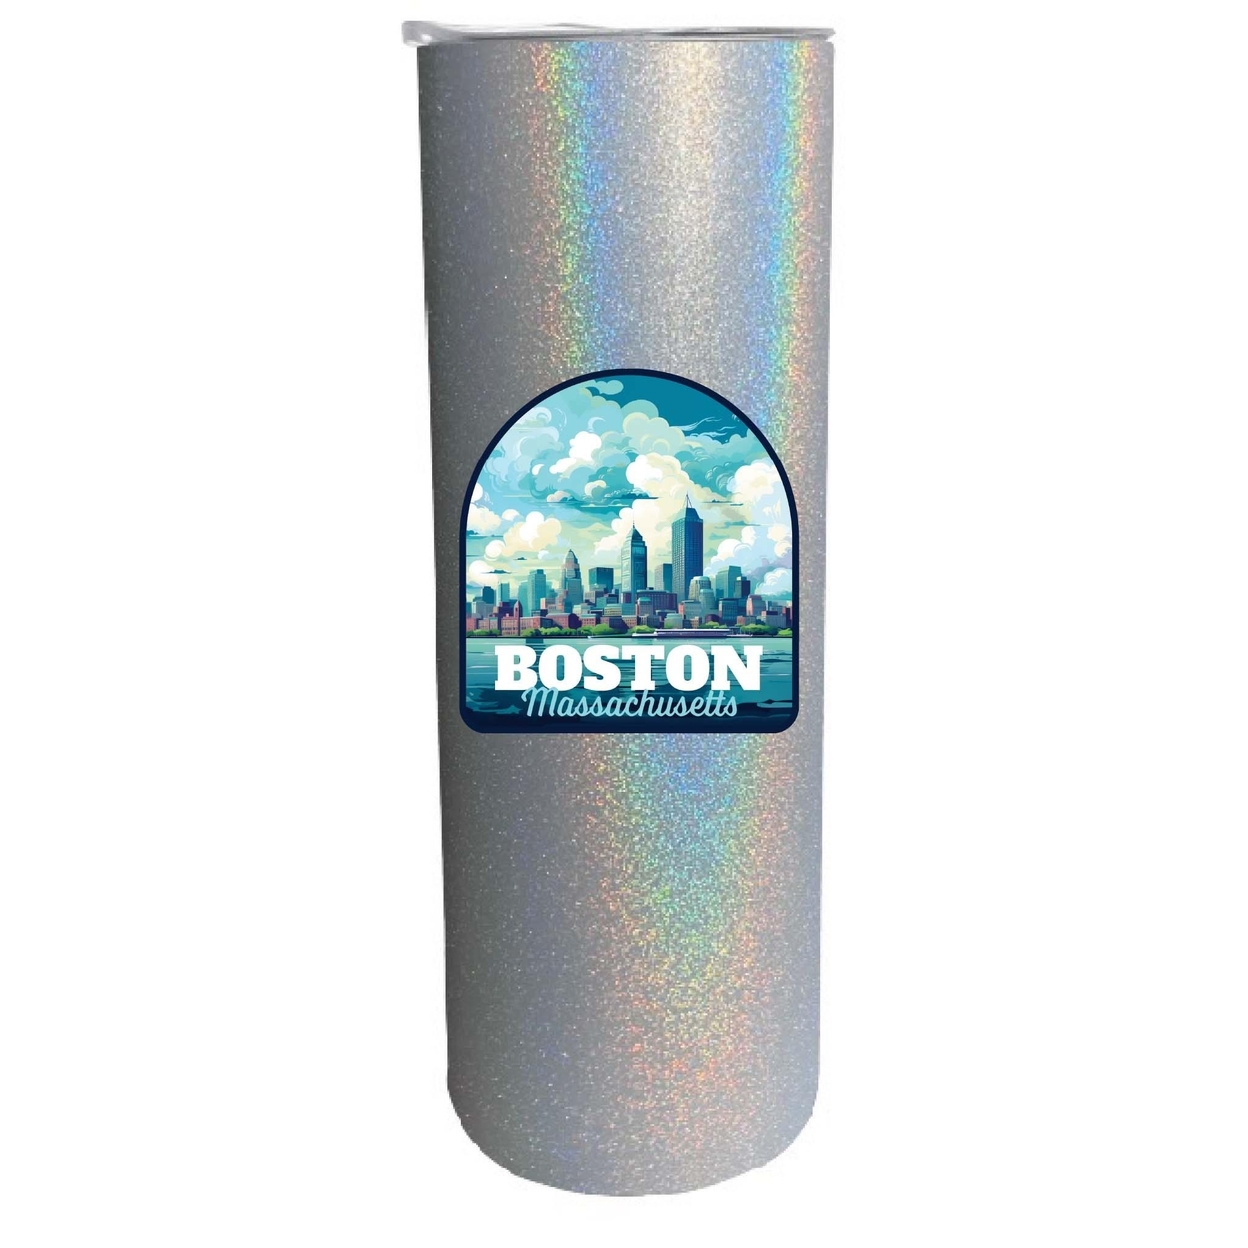 Boston Massachusetts A Souvenir 20 Oz Insulated Skinny Tumbler Glitter - Gray Glitter,,Single